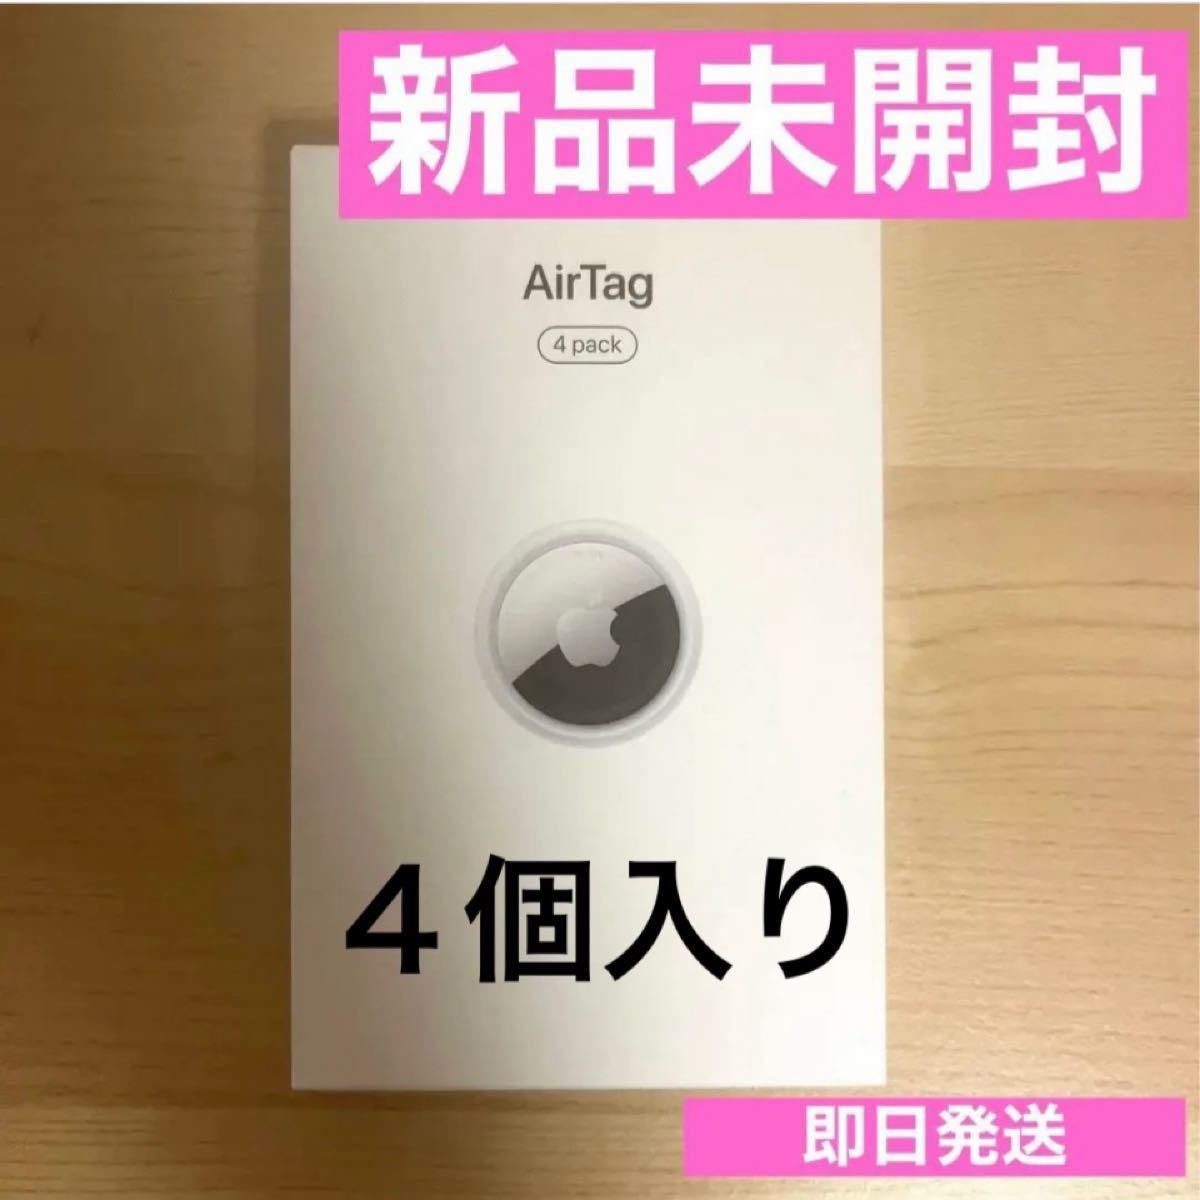 新品未開封Apple AirTag MX542ZP/A アップルエアタグ